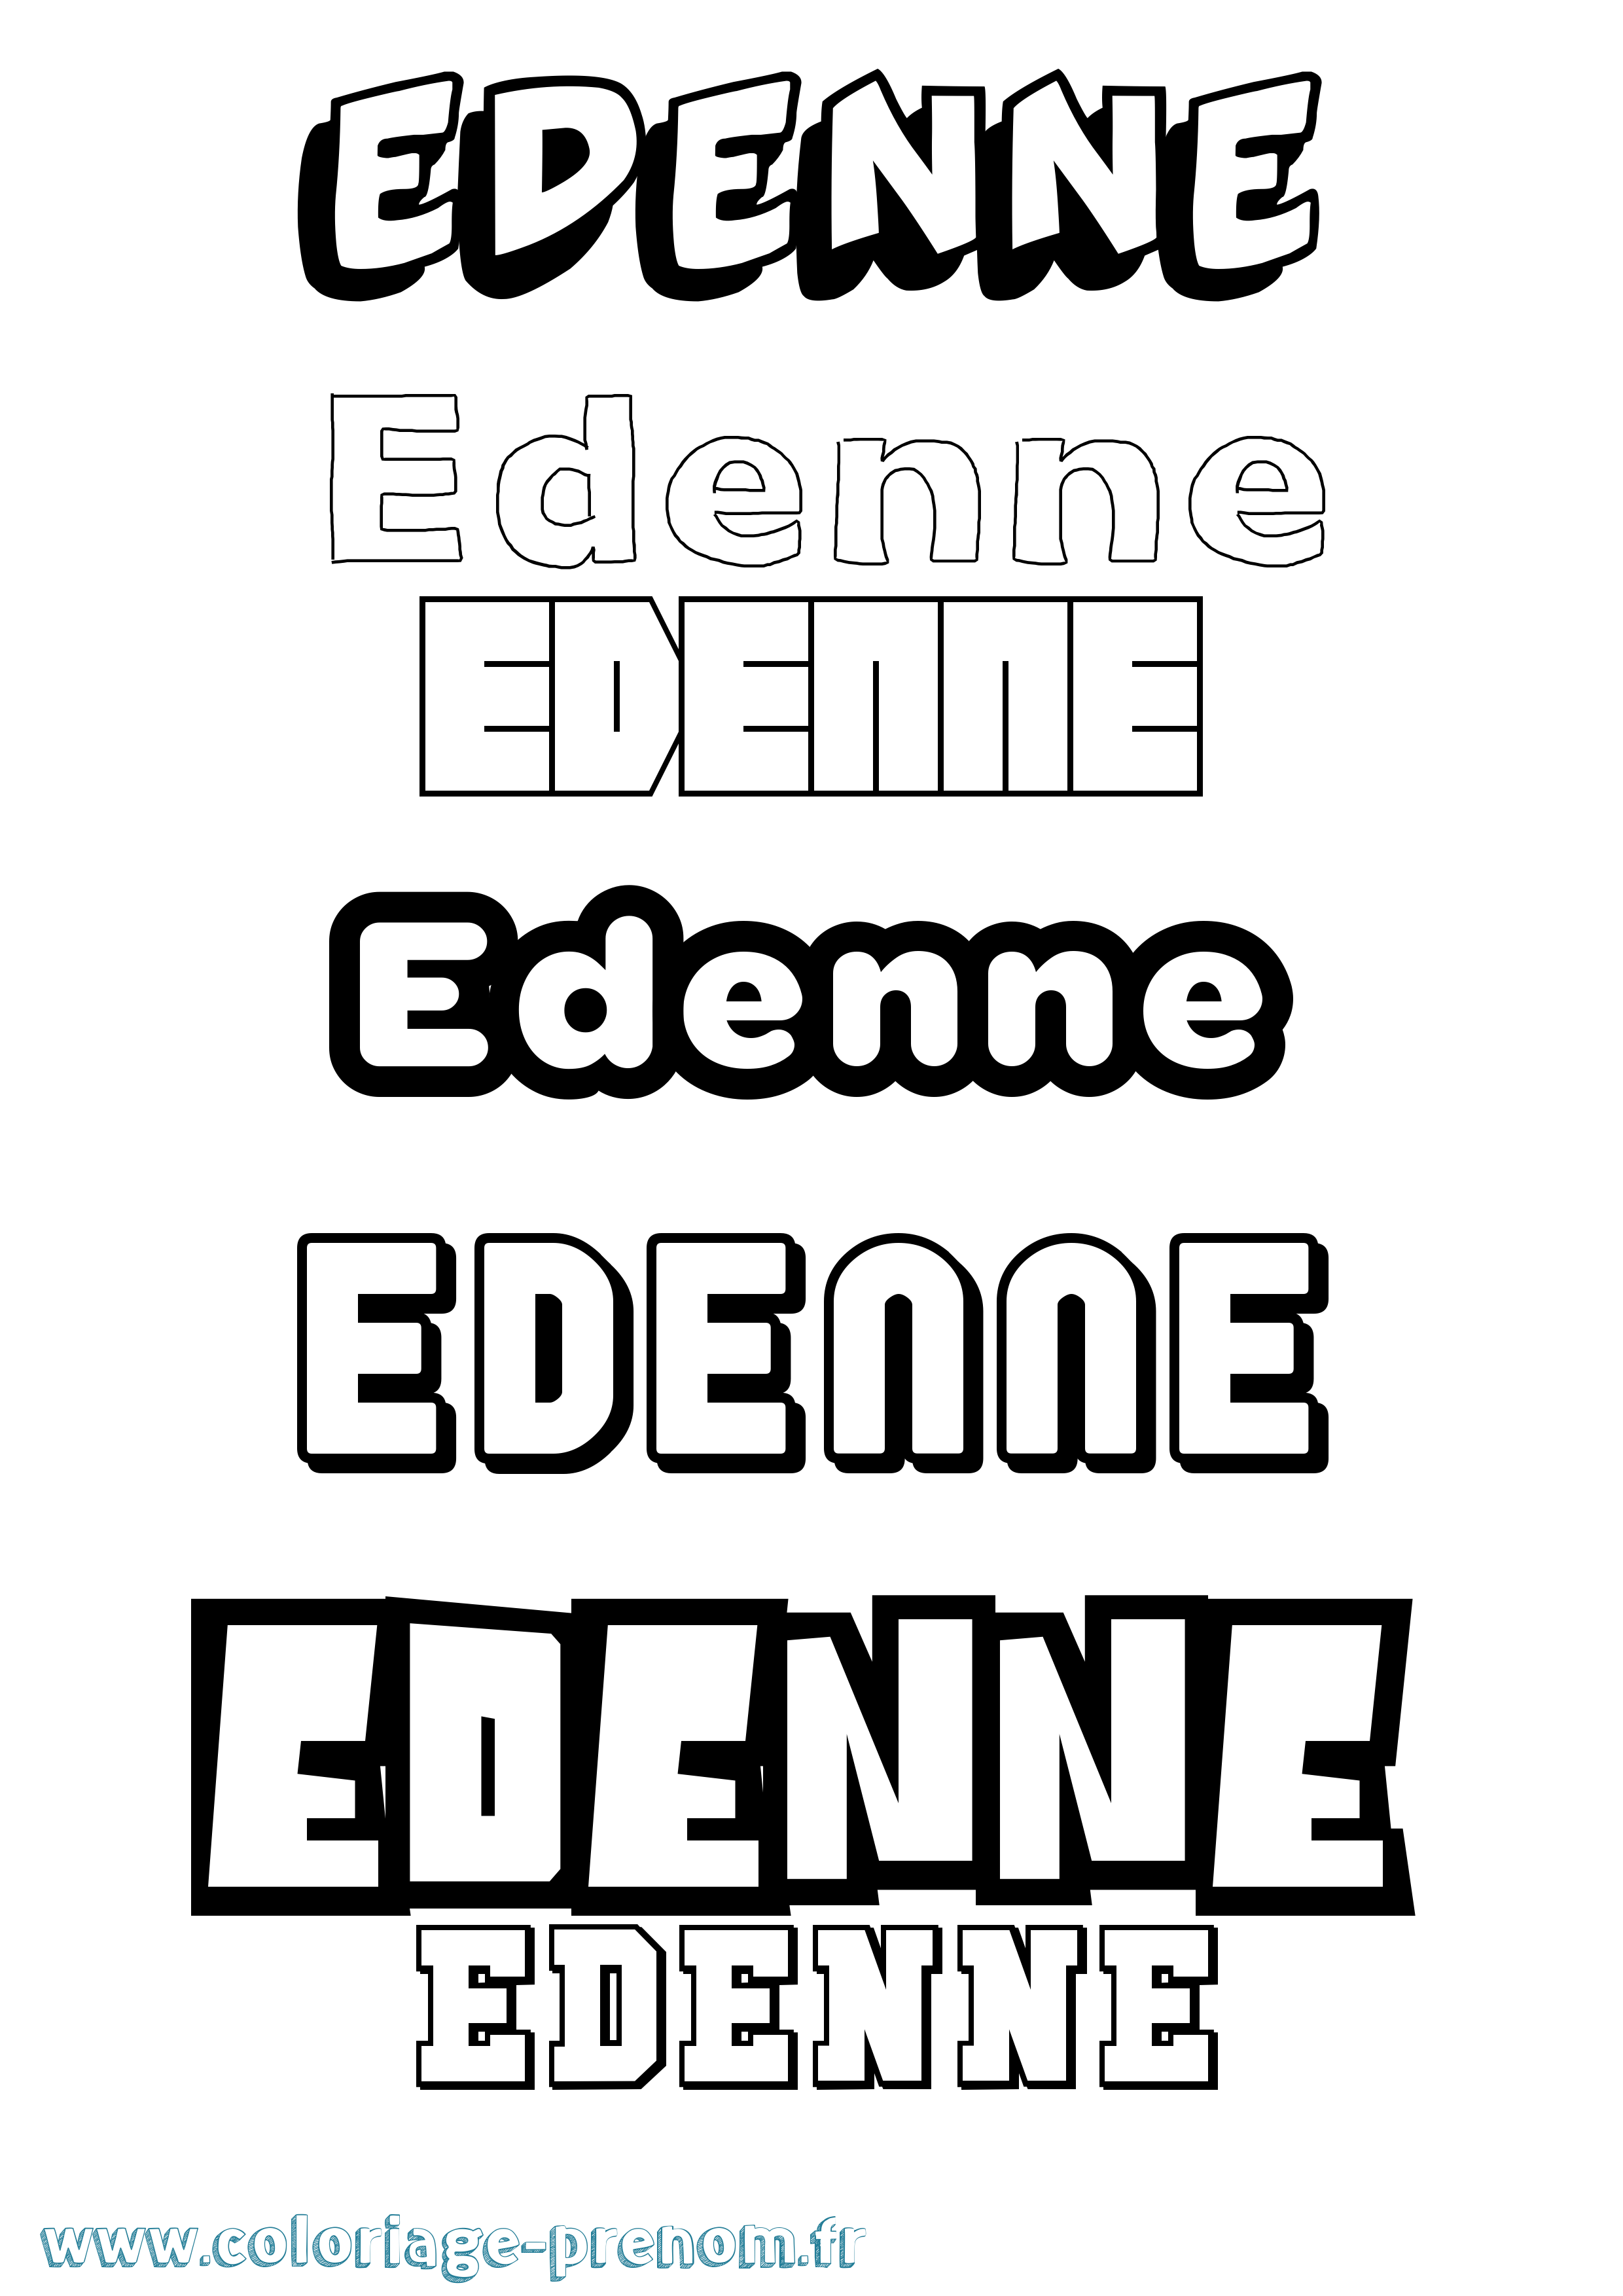 Coloriage prénom Edenne Simple